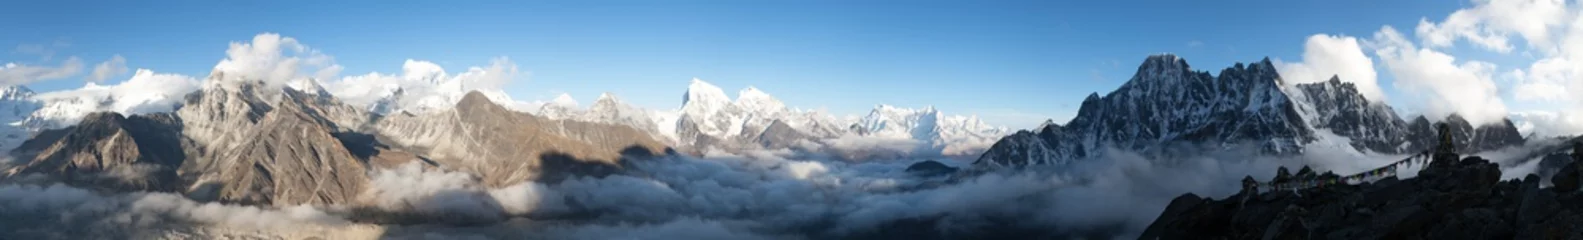 Abwaschbare Fototapete Panoramafotos Panorama des Mount Everest, Lhotse, Makalu und Cho Oyu